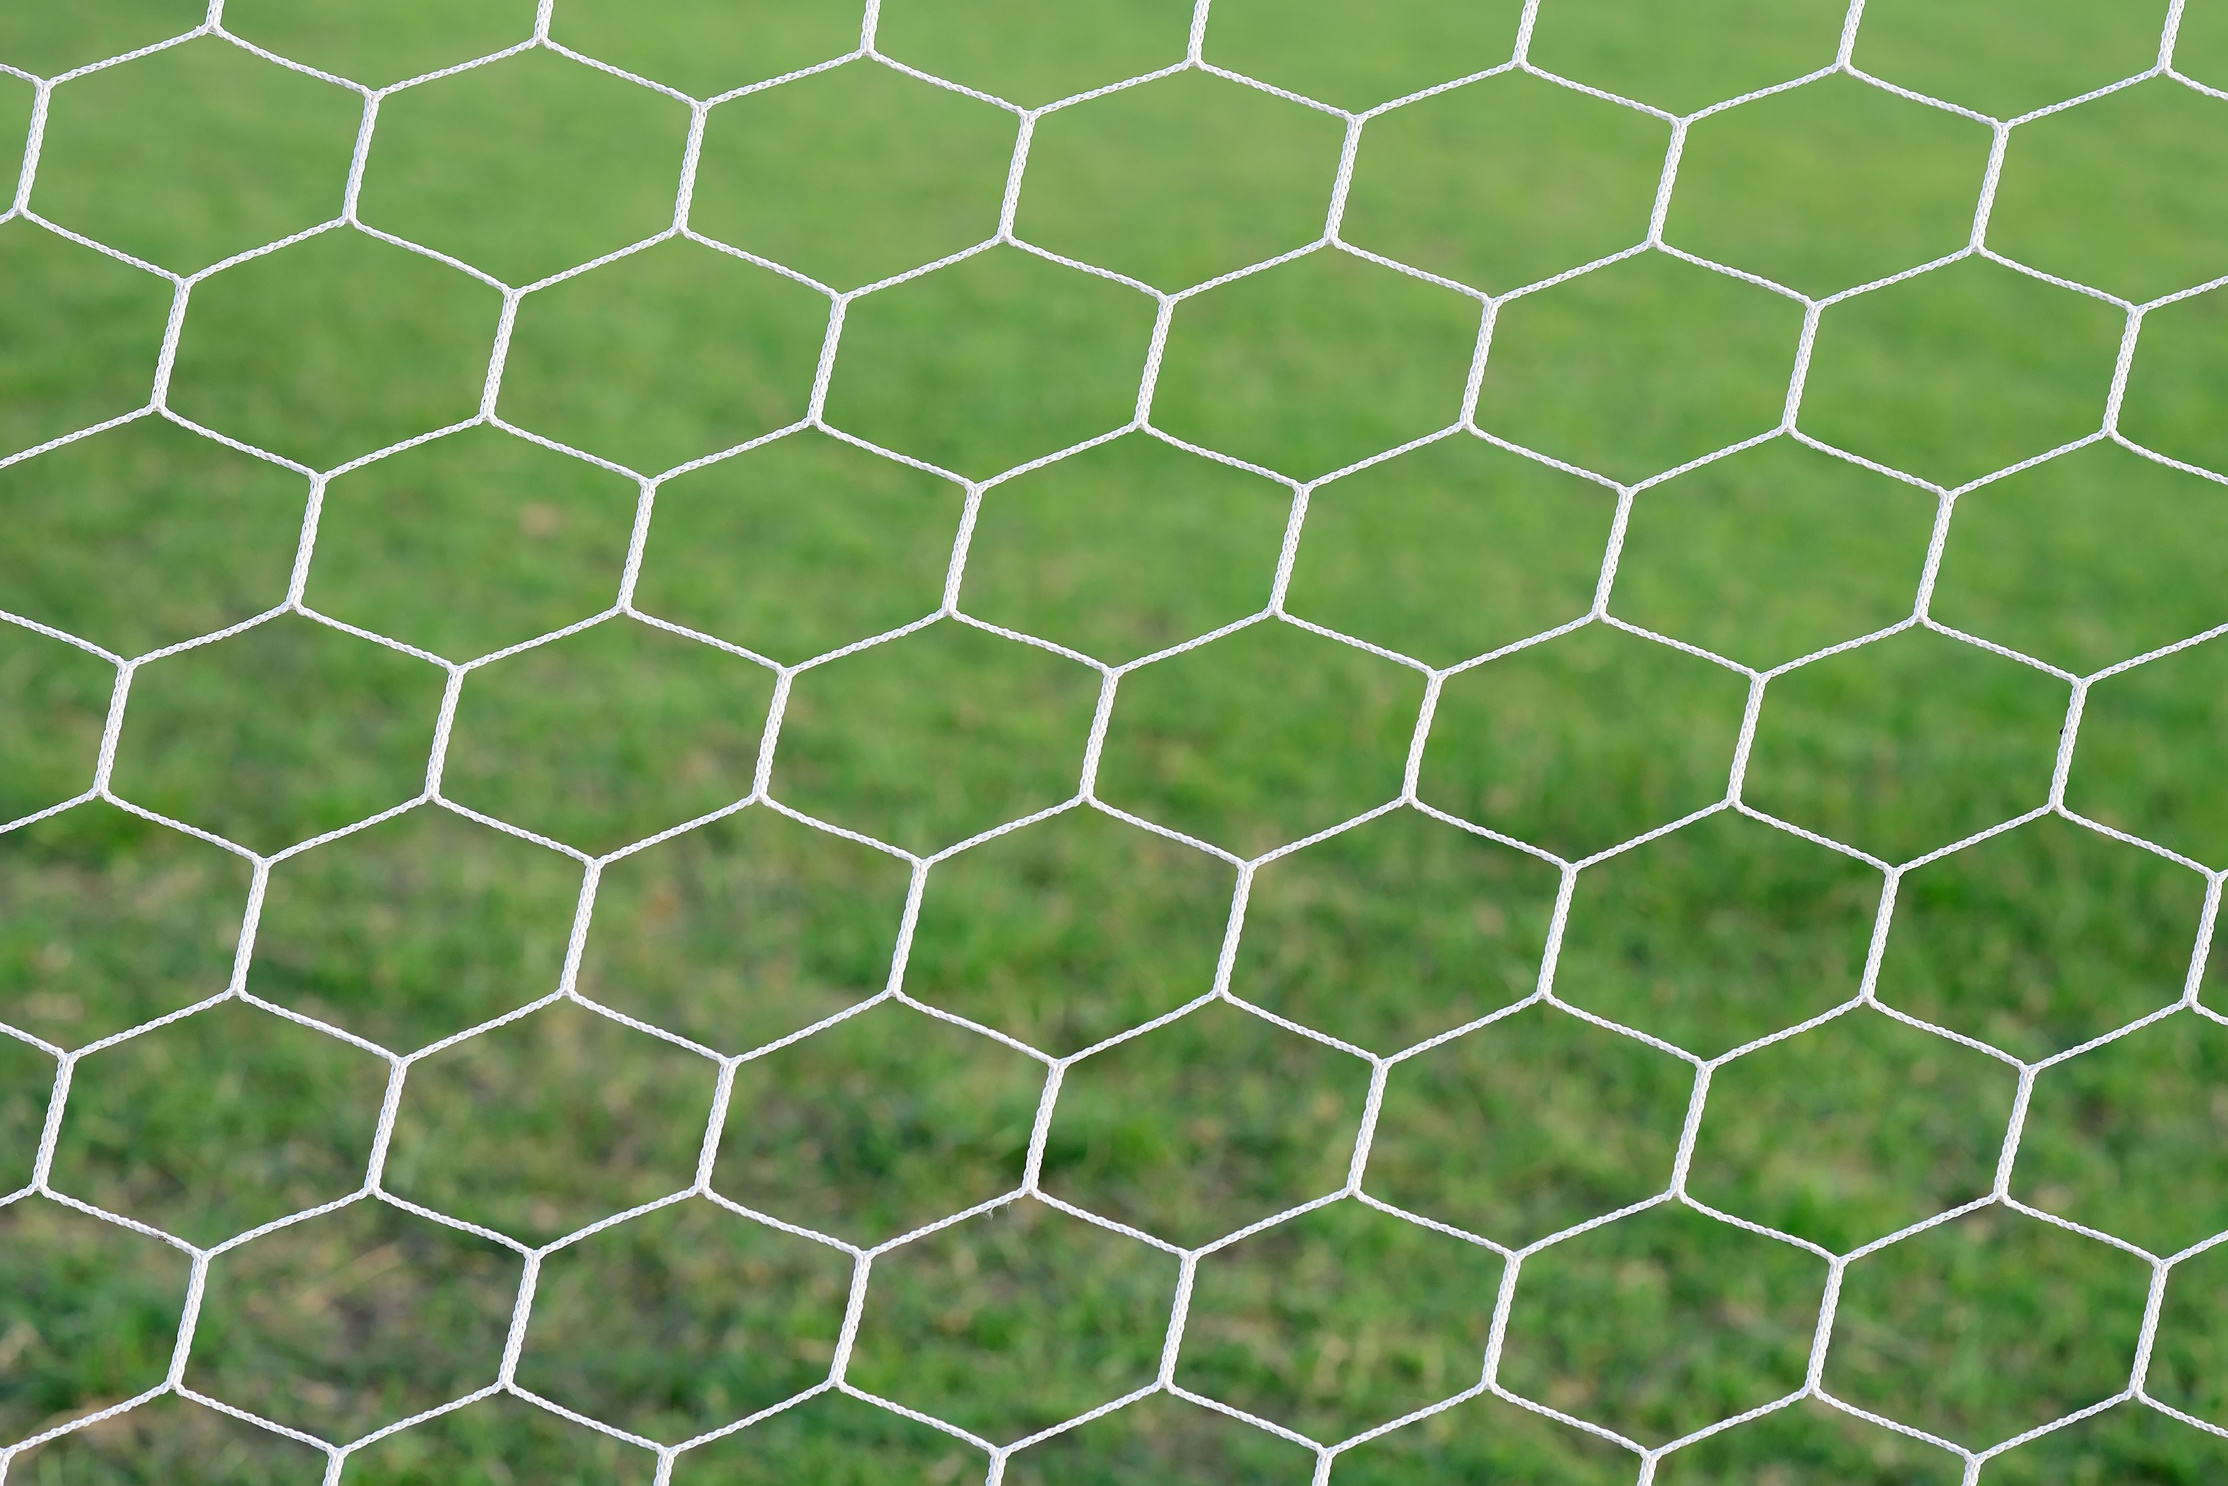 Soccer goal net.